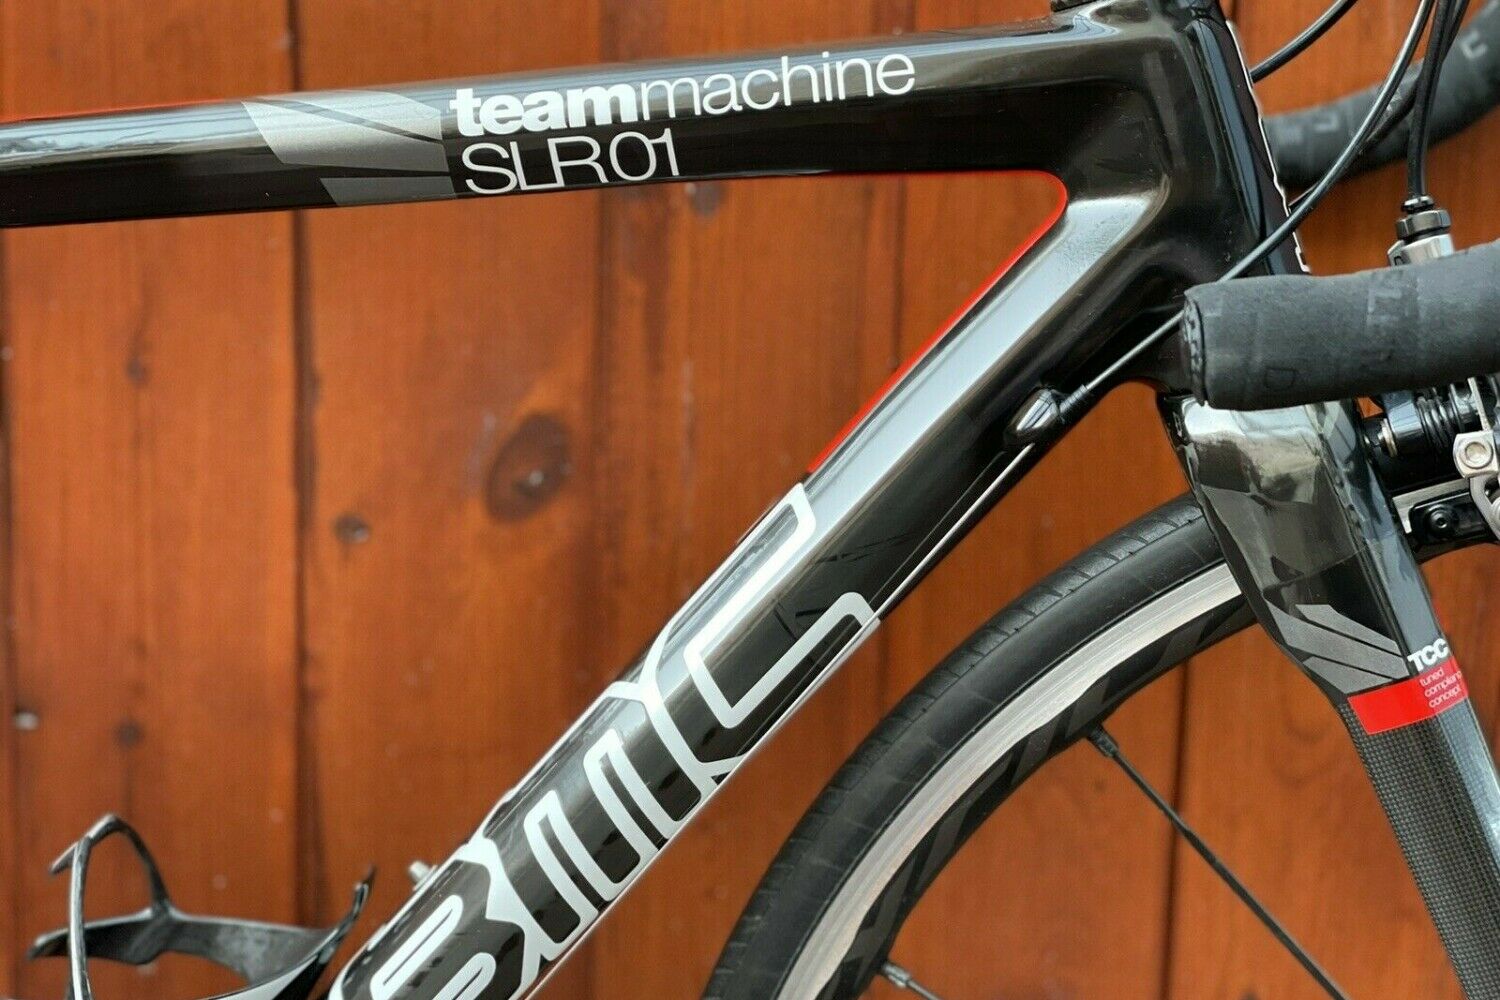 BMC TEAM MACHINE SLR01,CARBON RACE BICYCLE, DURA-ACE 11 versnellingen, maat 47 cm !